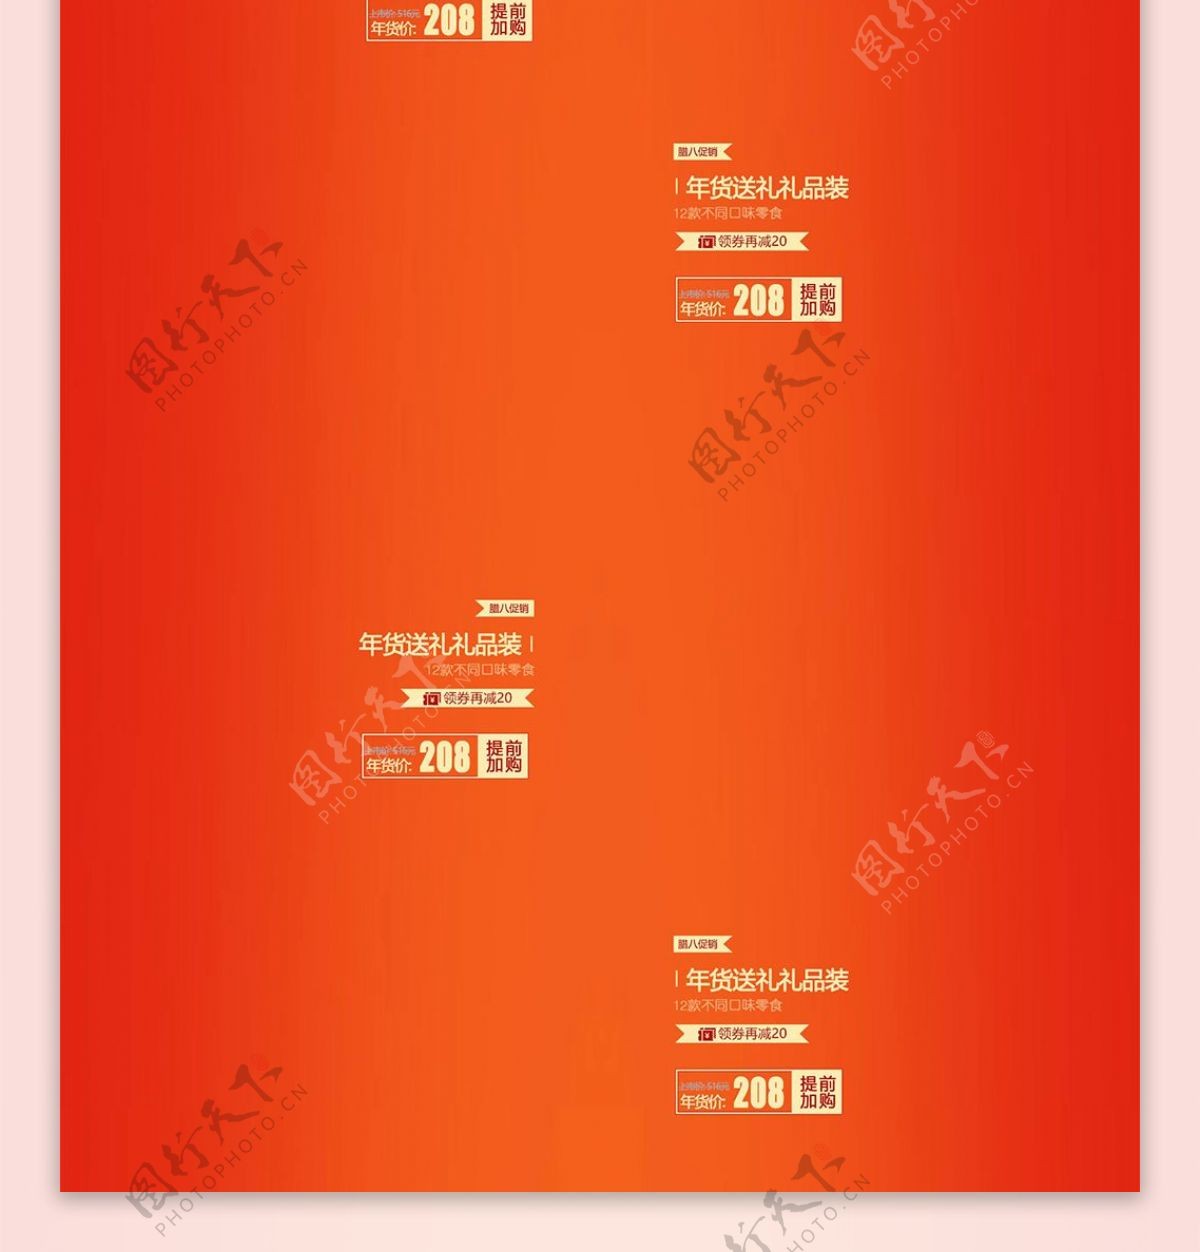 电商淘宝天猫红色喜庆年货节商业海报设计